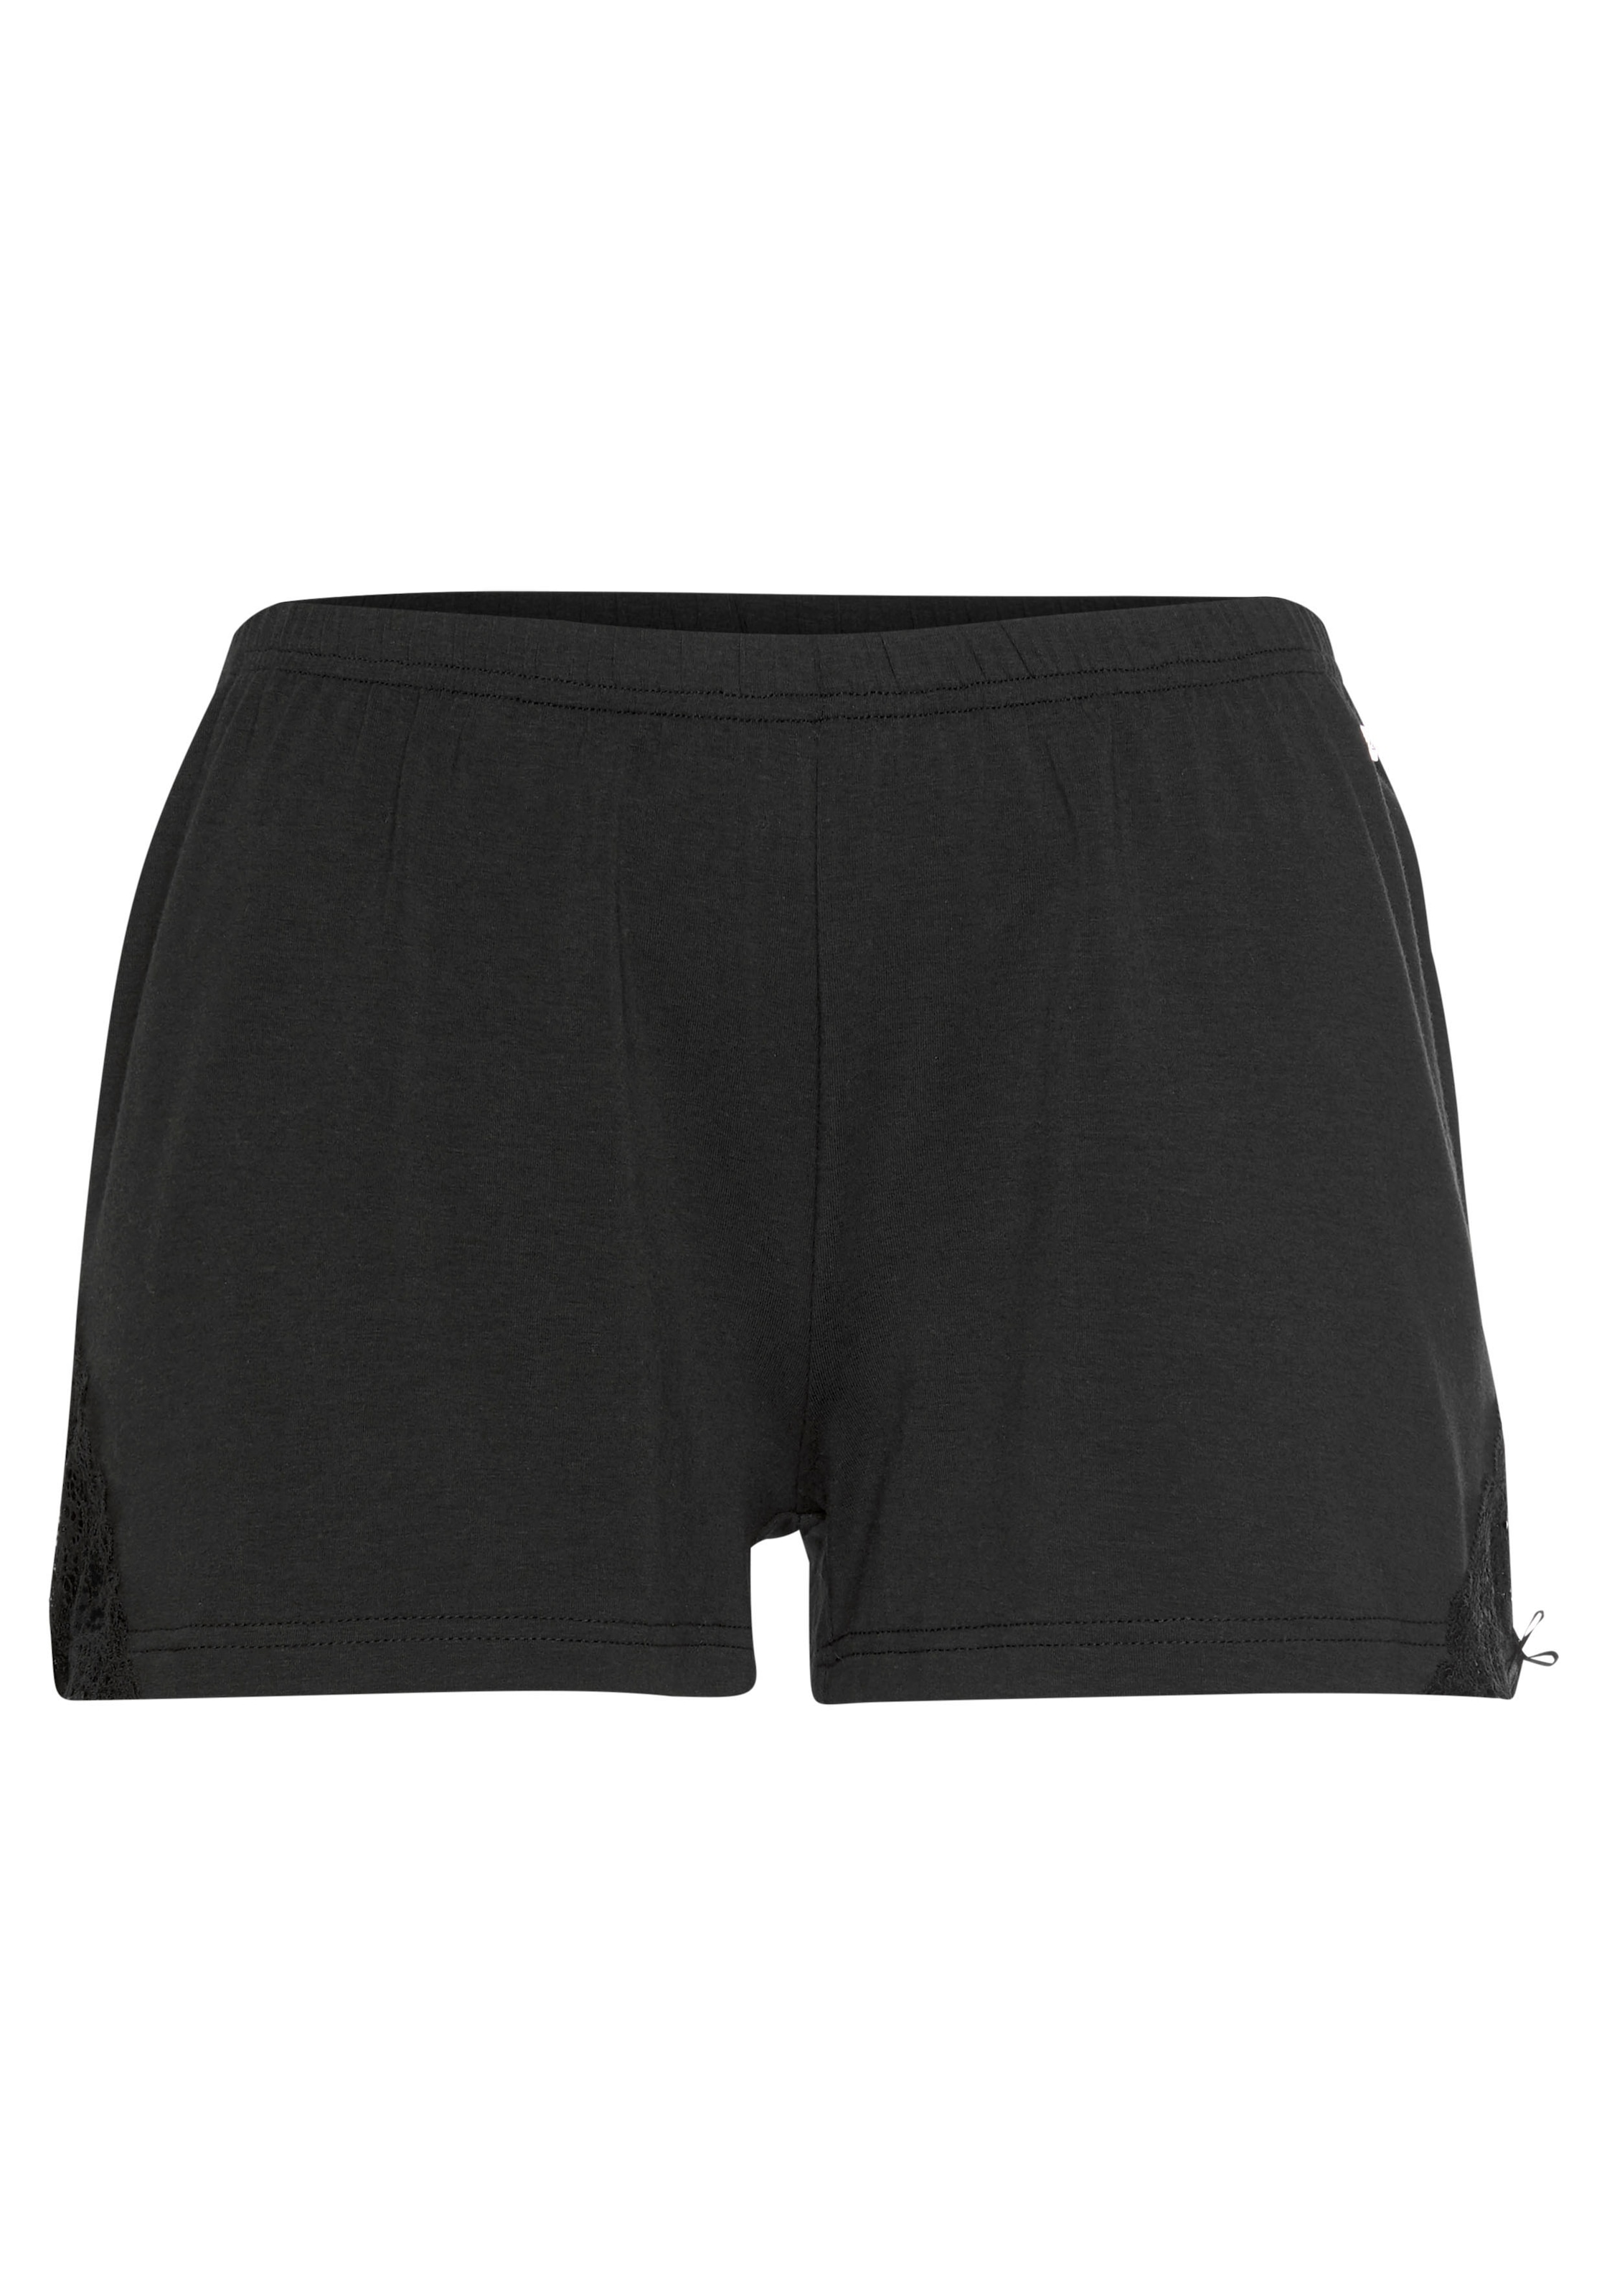 Shop im Online LASCANA mit OTTO Shorts, Spitzeneinsätzen